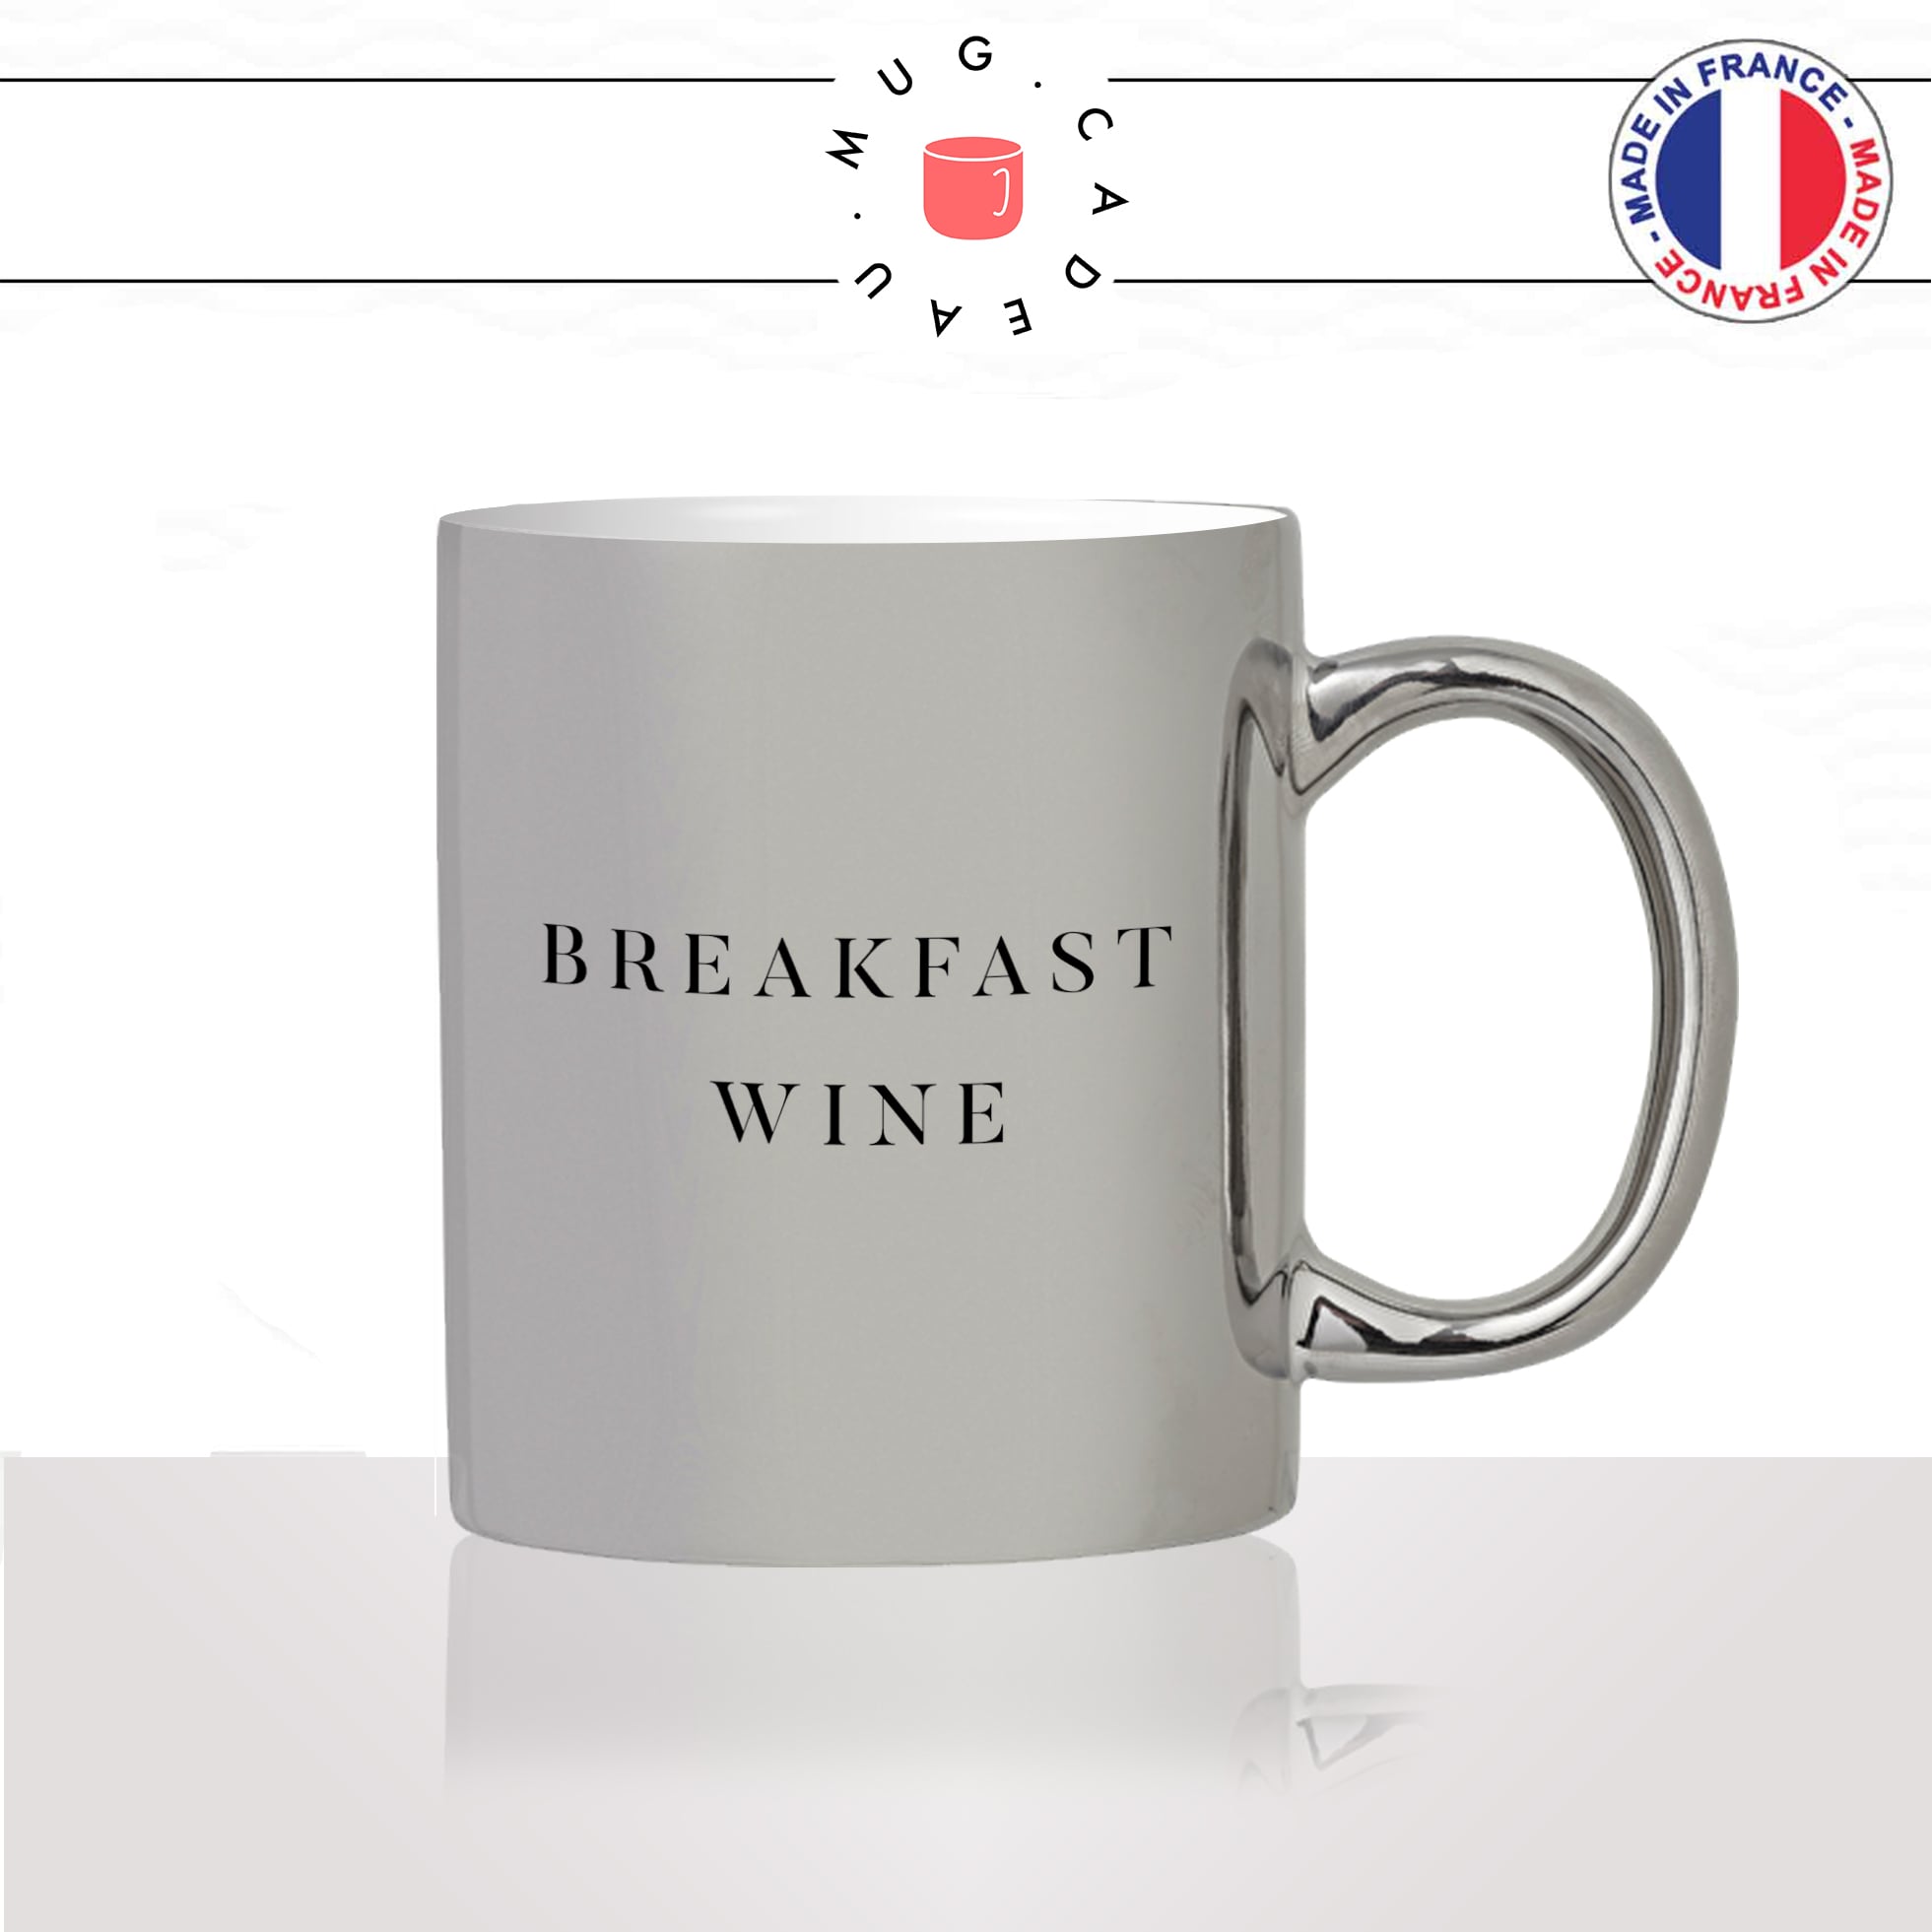 mug-tasse-silver-argenté-breakfast-wine-vin-petit-déjeuné-croissant-collegues-travail-drole-cool-humour-fun-idée-cadeau-personnalisé-café-thé2-min